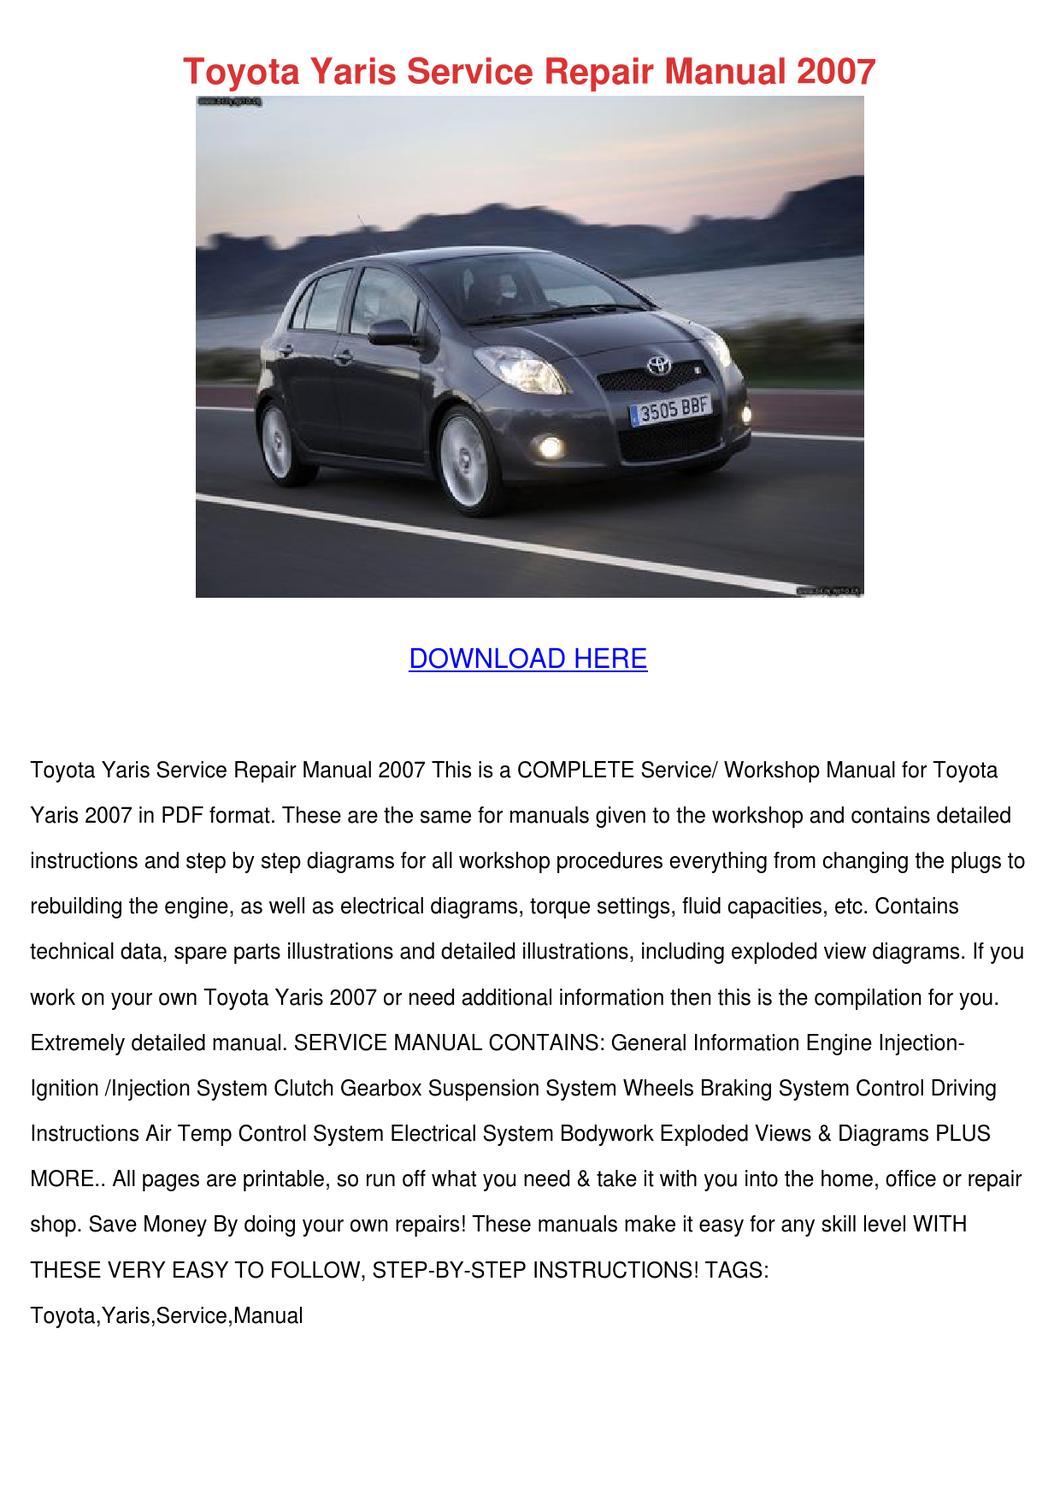 Toyota yaris repair manual free. download full